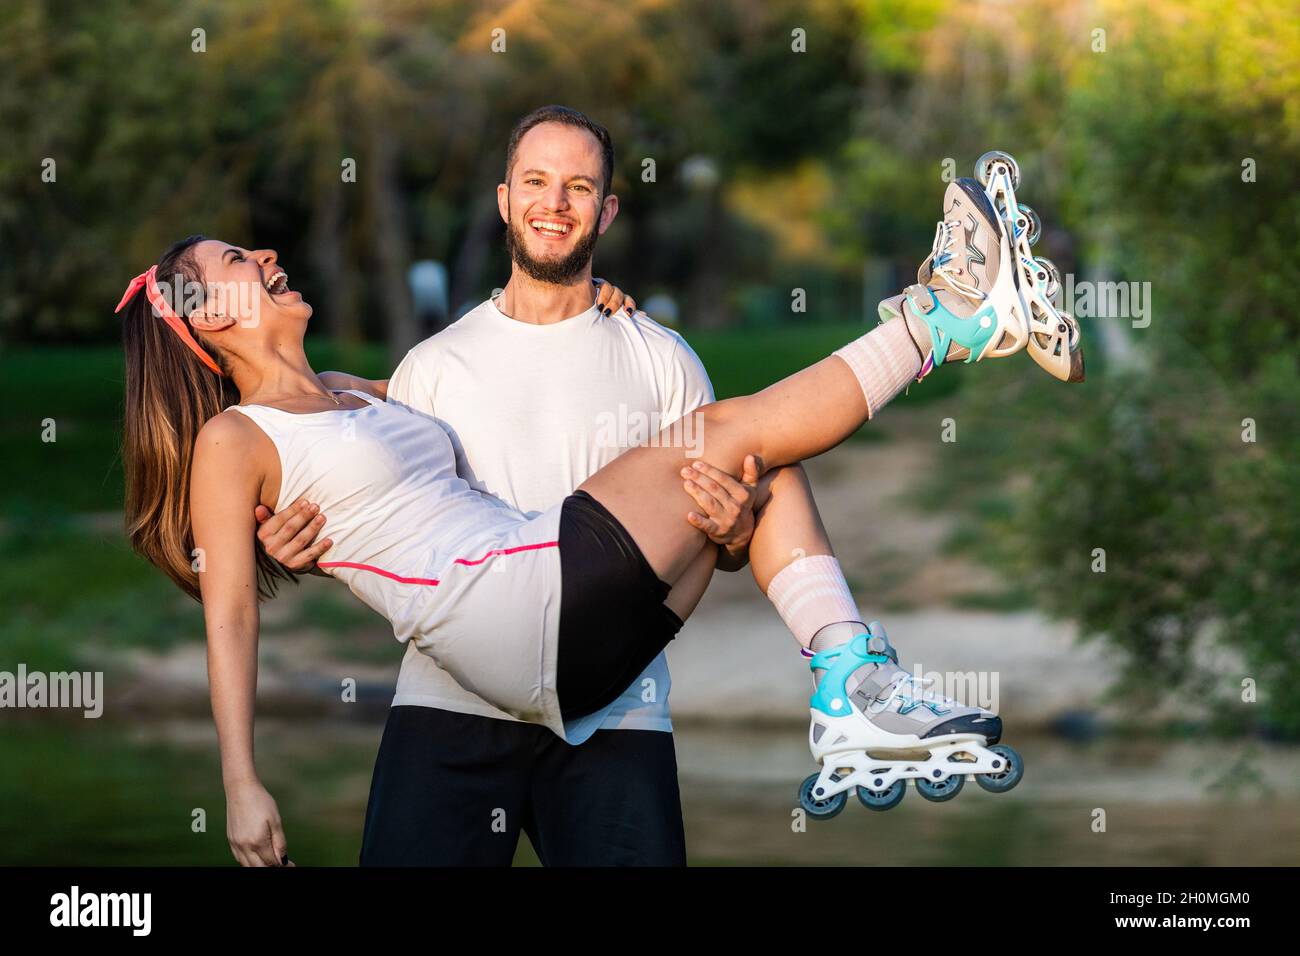 Homme tenant les bras une femme sur des patins à roues alignées dans un parc. Banque D'Images